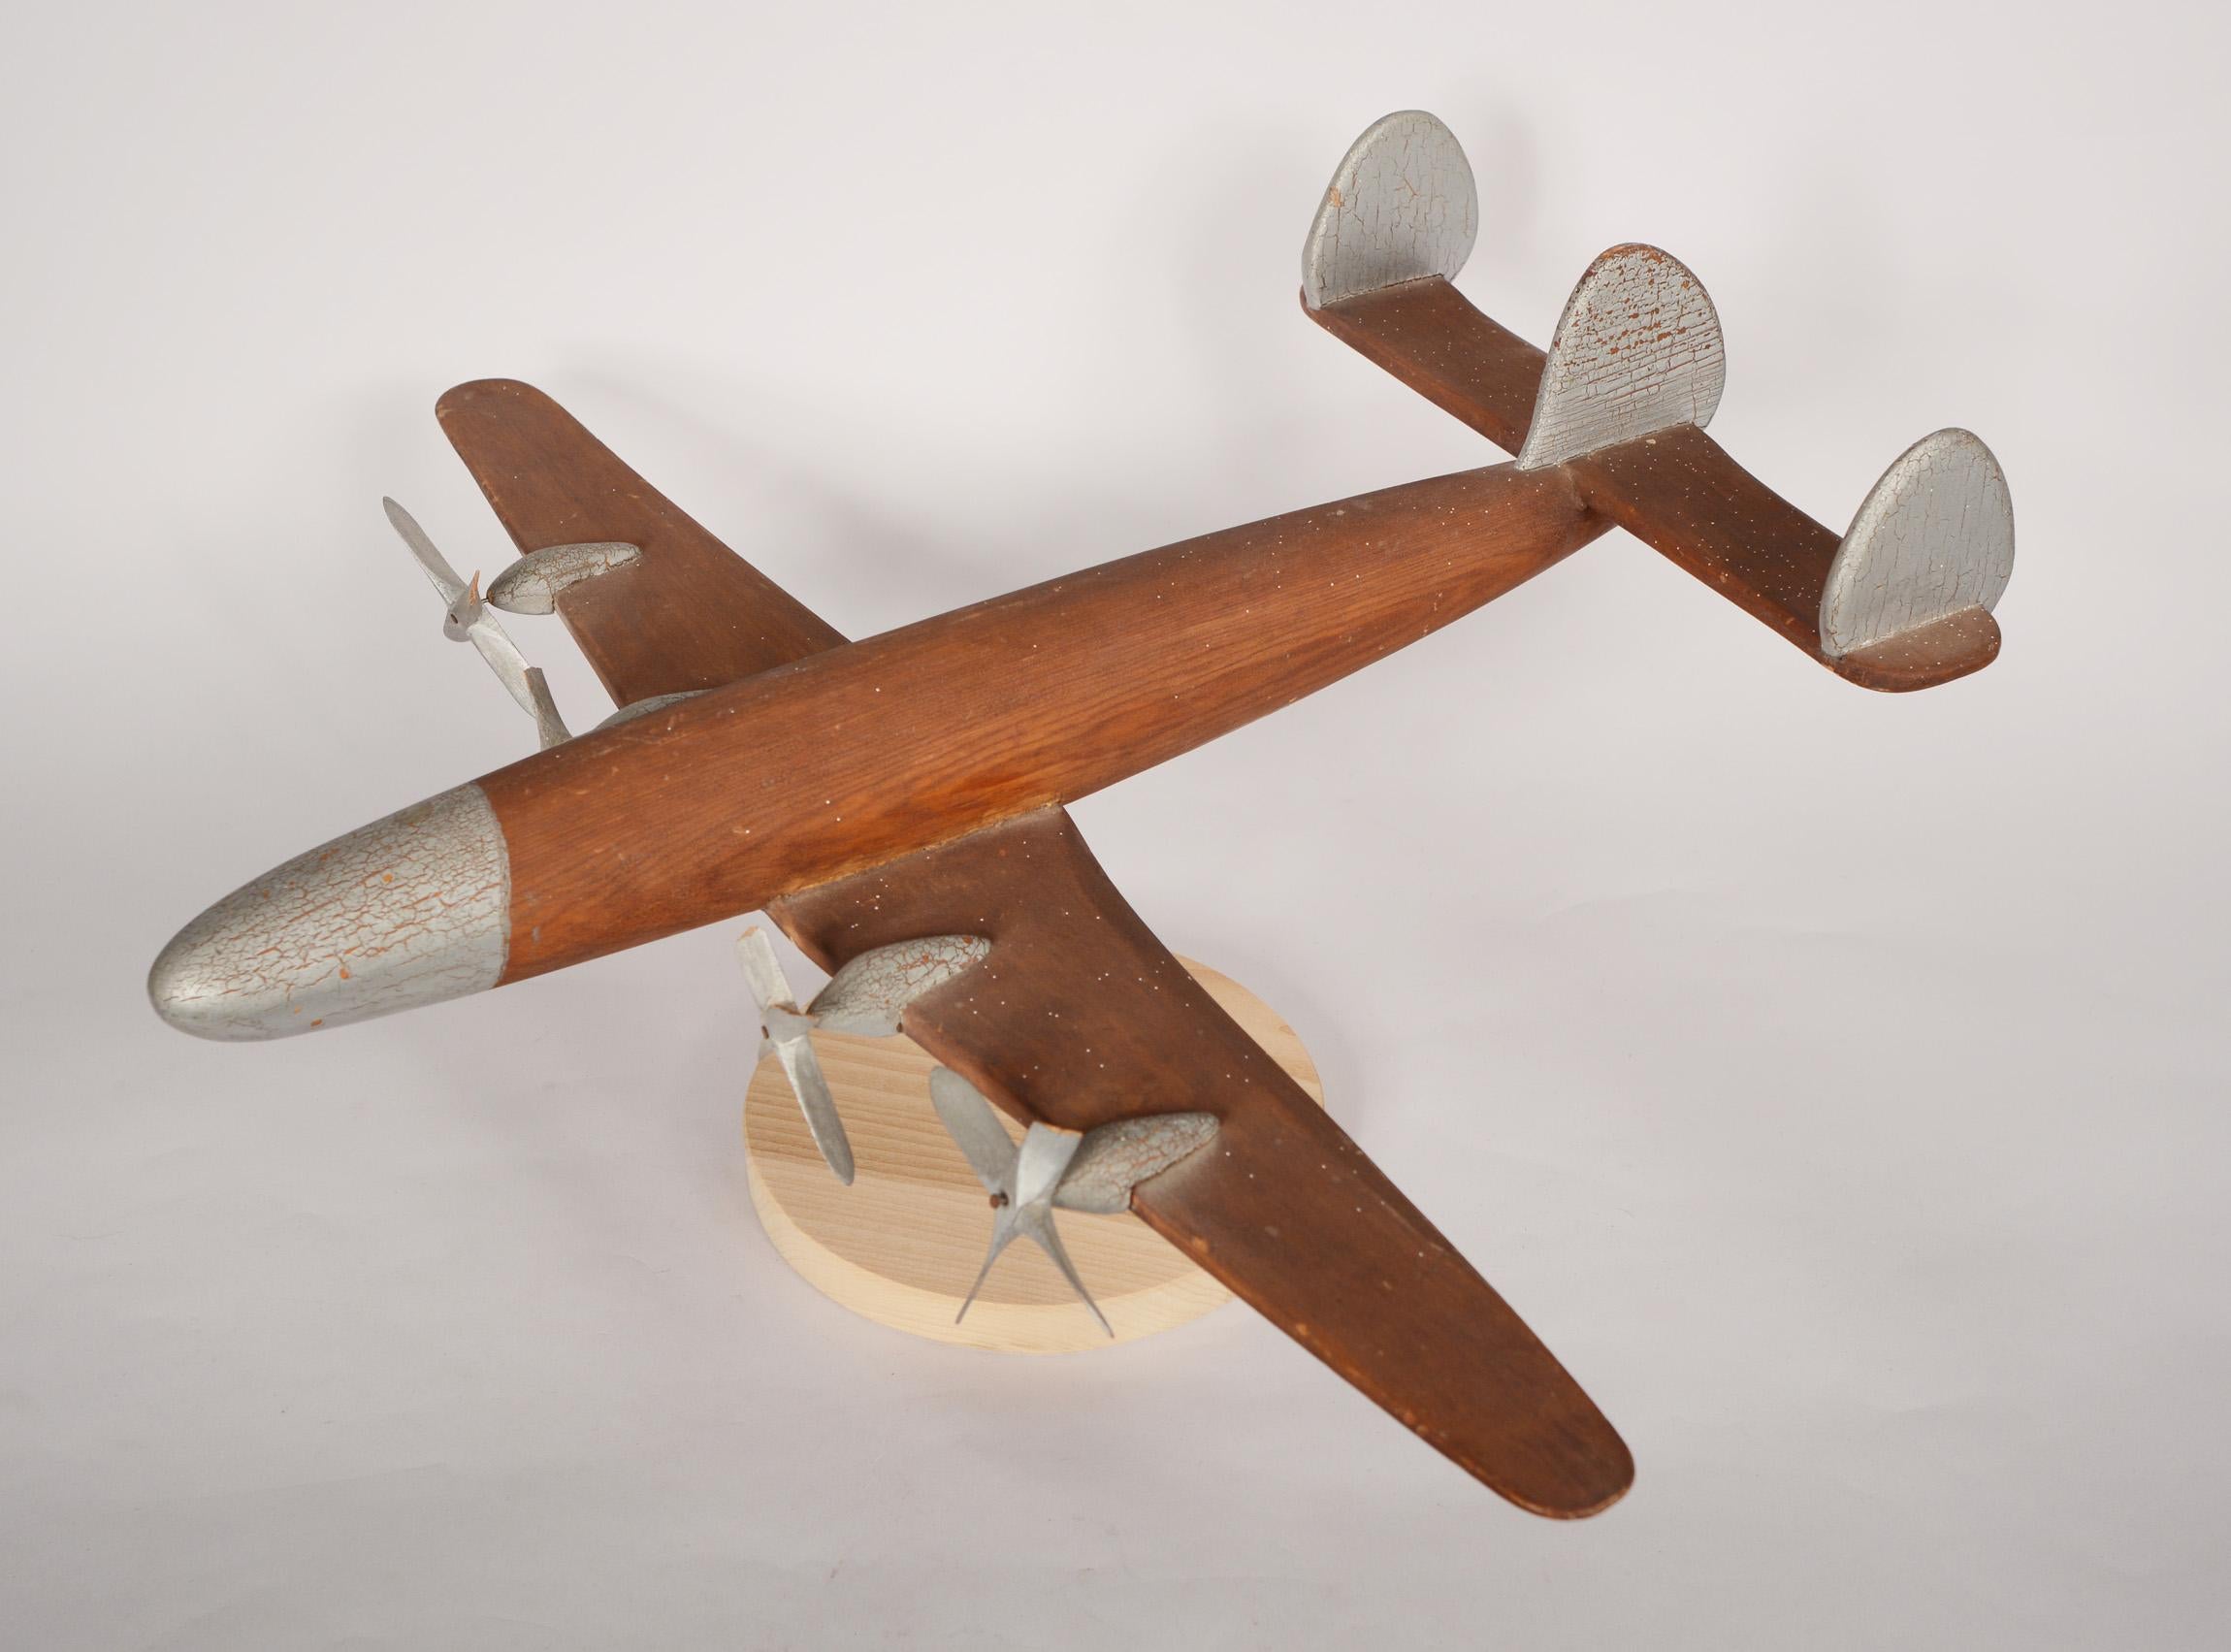 Großes Modell einer Lockheed Constellation, hergestellt von Charles Long. Das Flugzeug ist aus Redwood gefertigt. Die Propeller sind aus Kiefernholz. Charles war Hauptmann im Army Air Corps und arbeitete später, glaube ich, für Lockheed. Es gibt